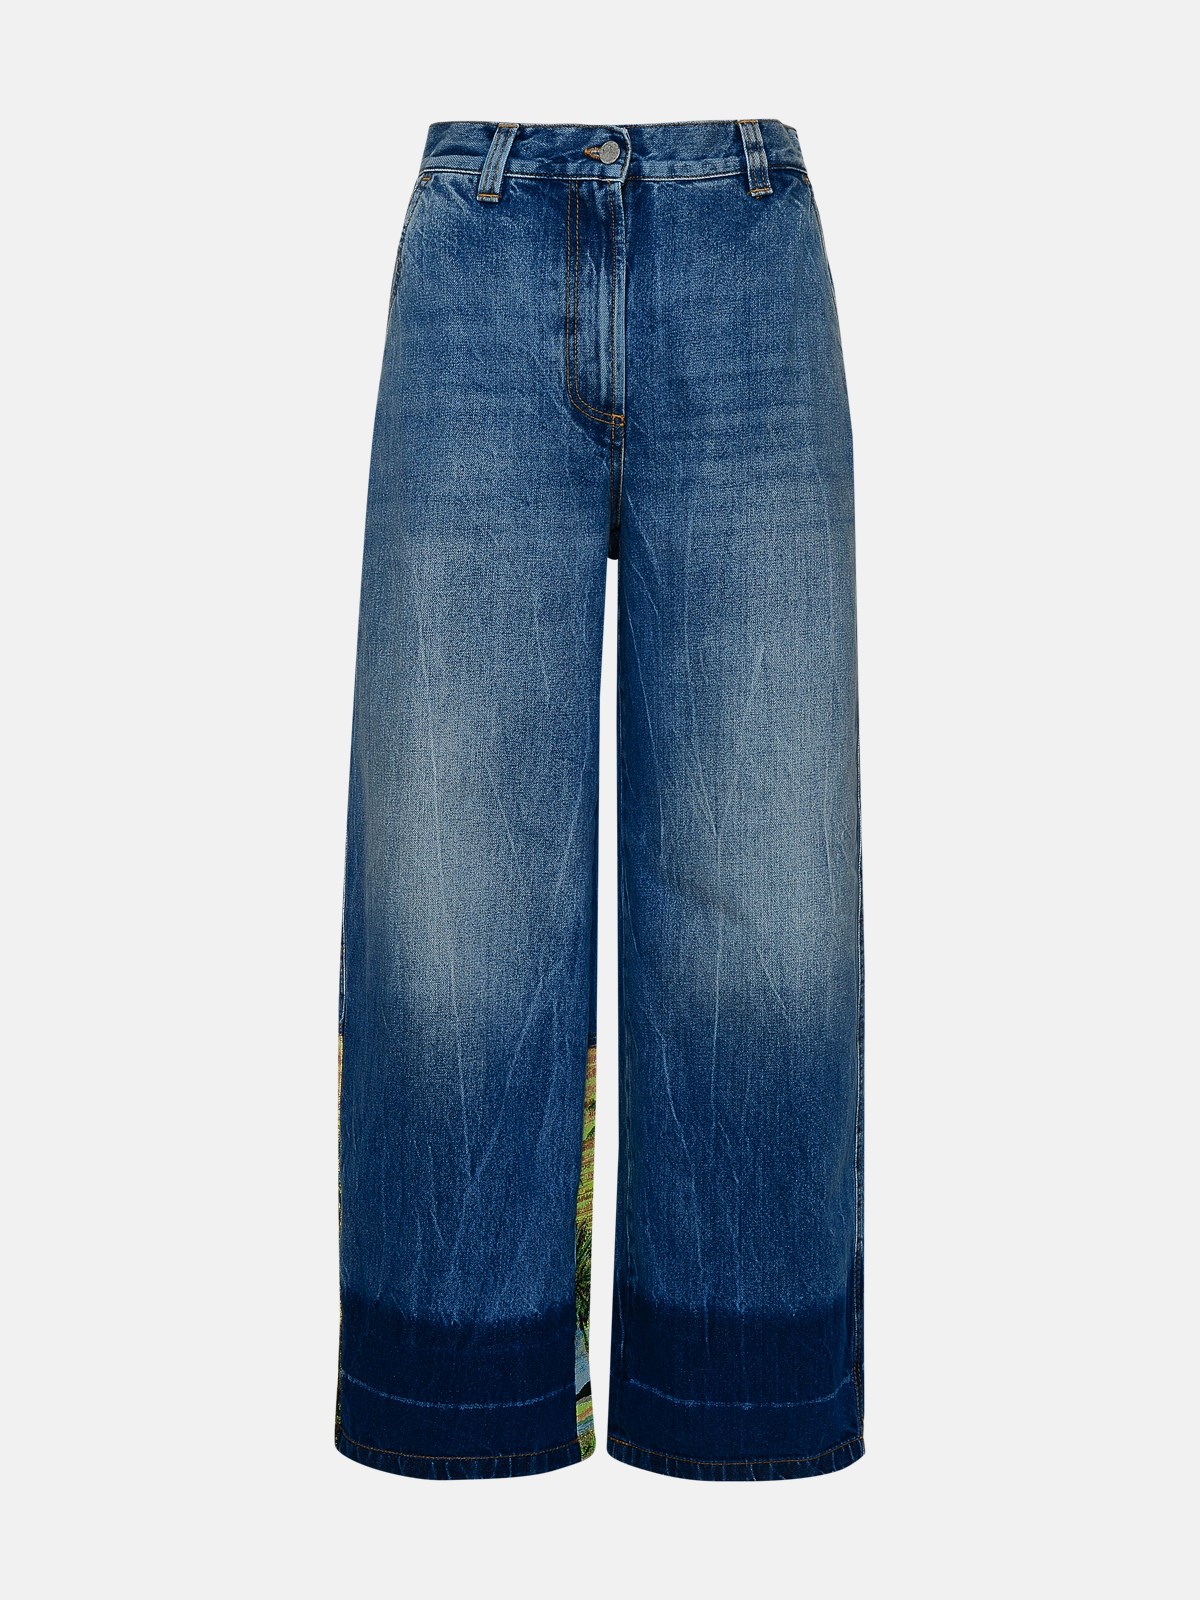 Palm Angels Blue Cotton Jeans